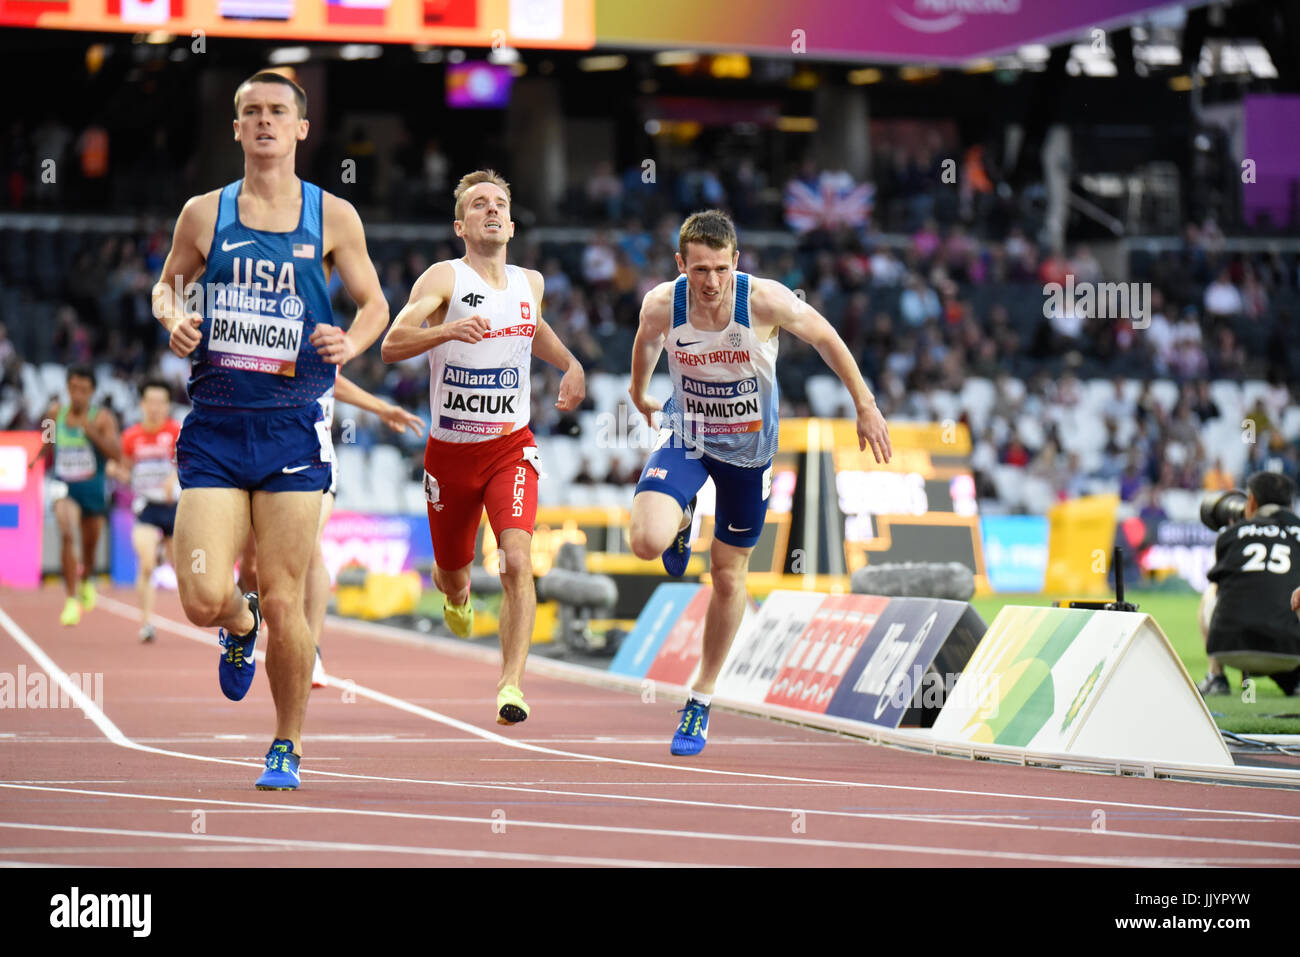 James Hamilton progressé au 800m T20 samedi dernier dans le monde Para athlétisme championnats dans le stade de Londres Banque D'Images